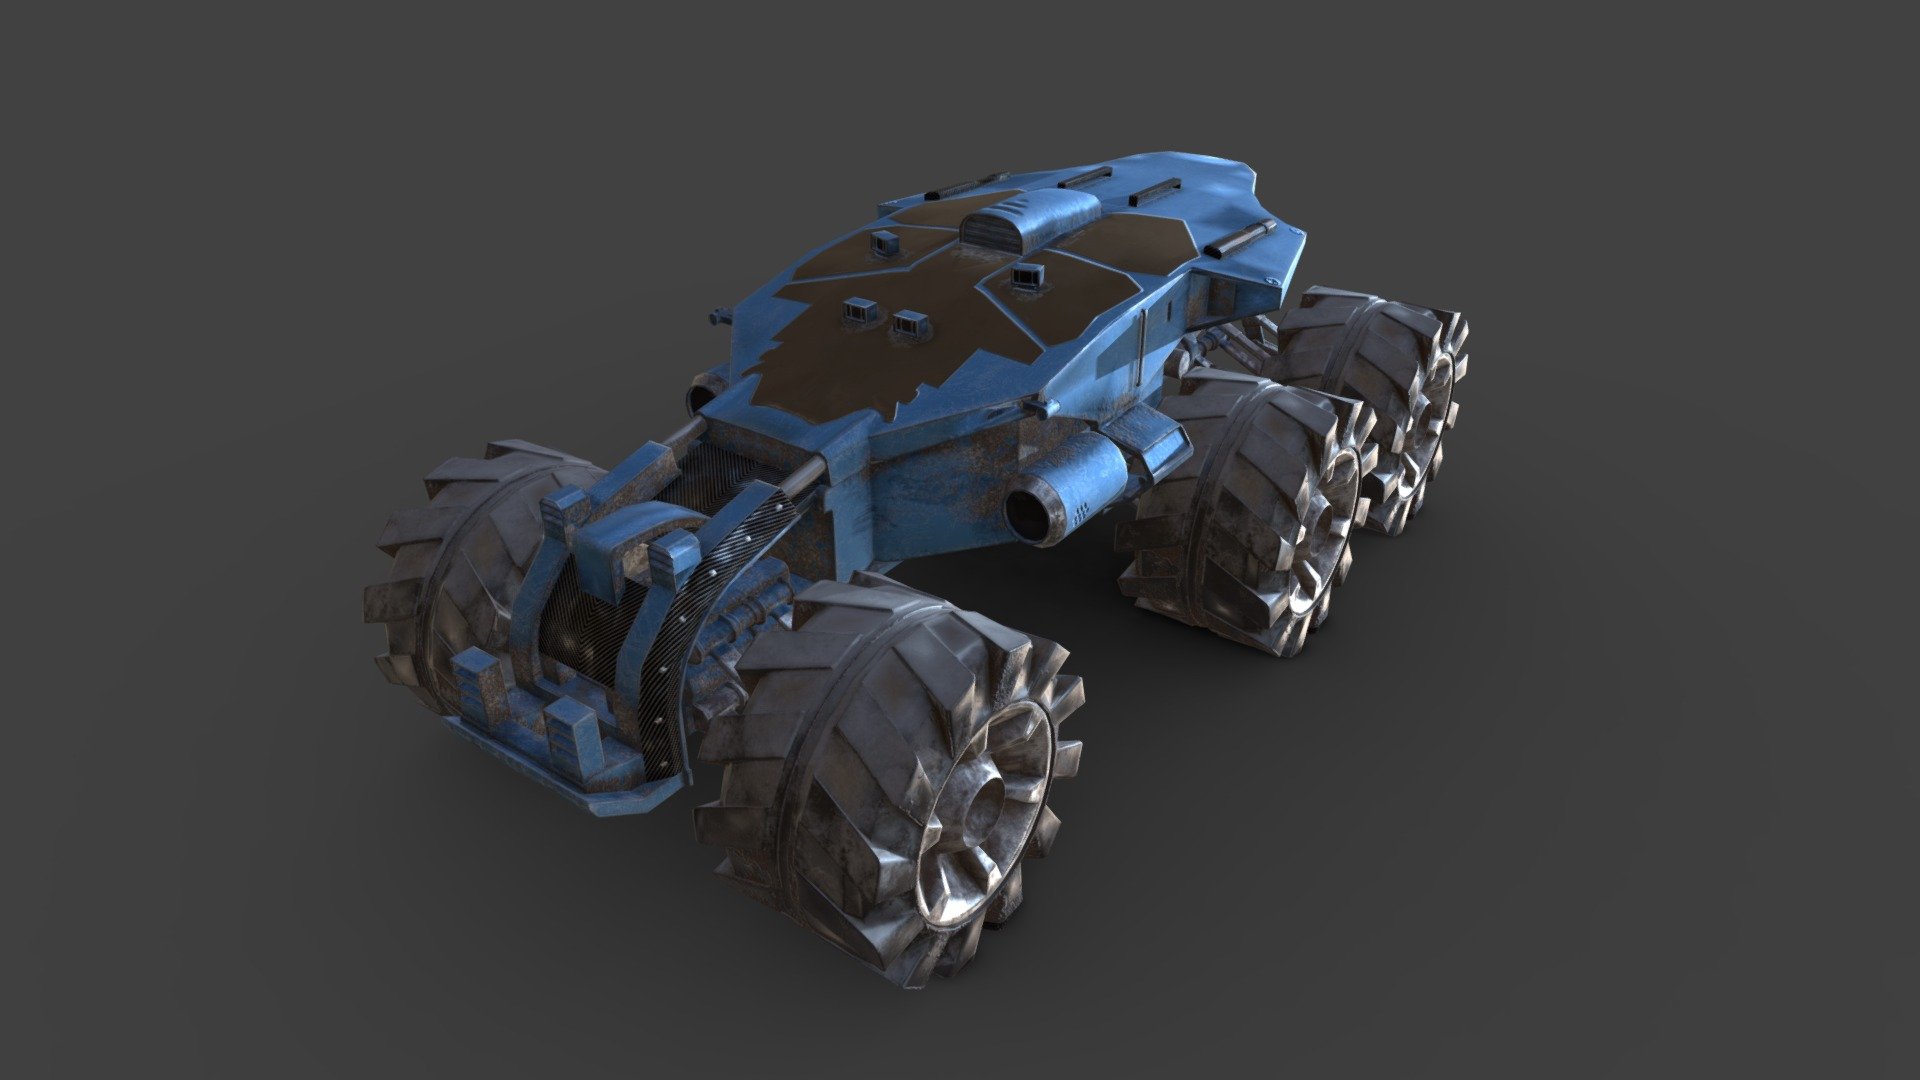 Work in progress - Scifi Vehicle - 3D model by Jofin M Thomas (@jofin) 3d model